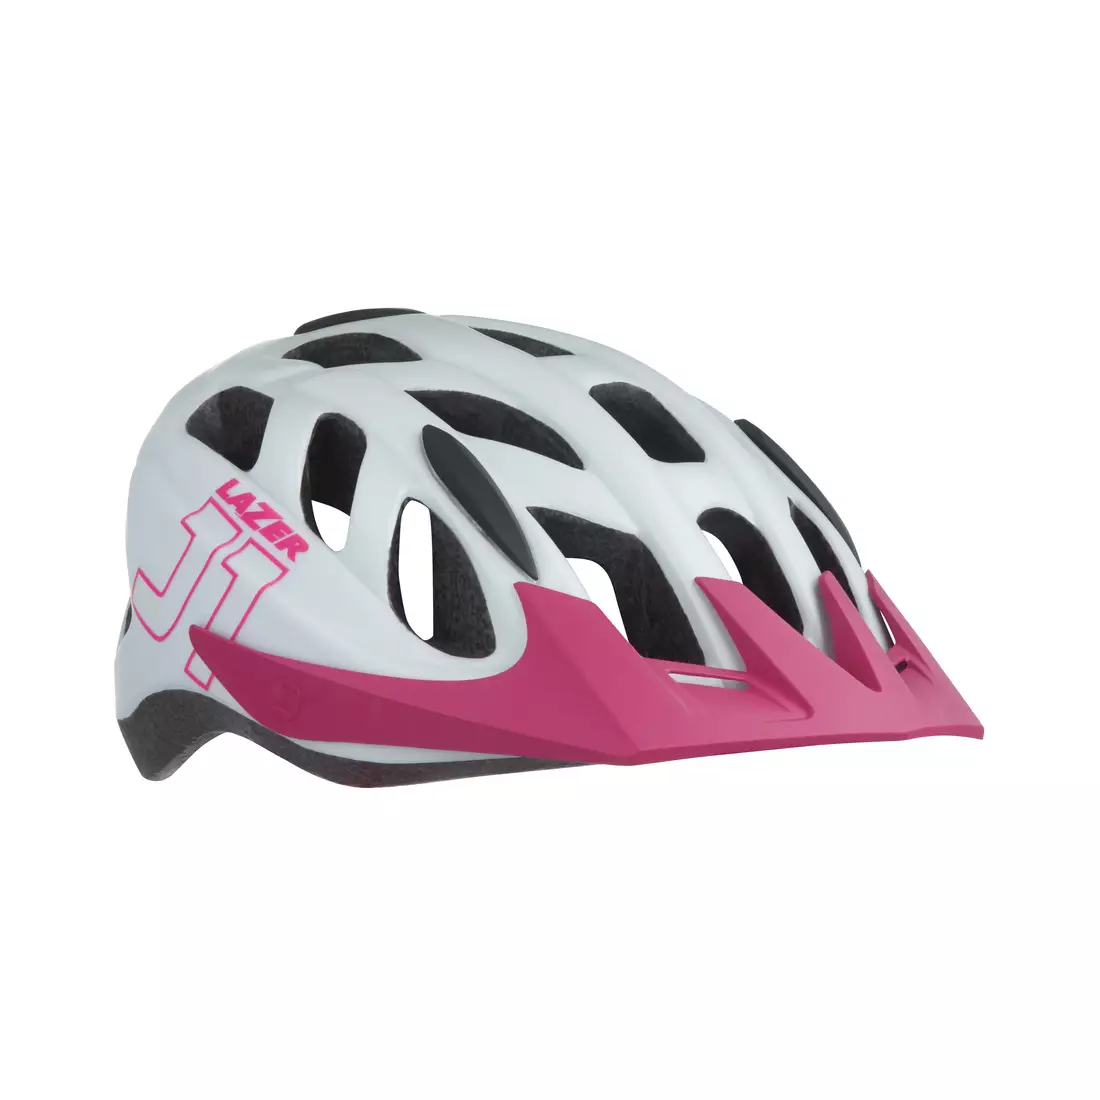 LAZER detská/juniorská cyklistická prilba j1 matte white pink BLC2197885185